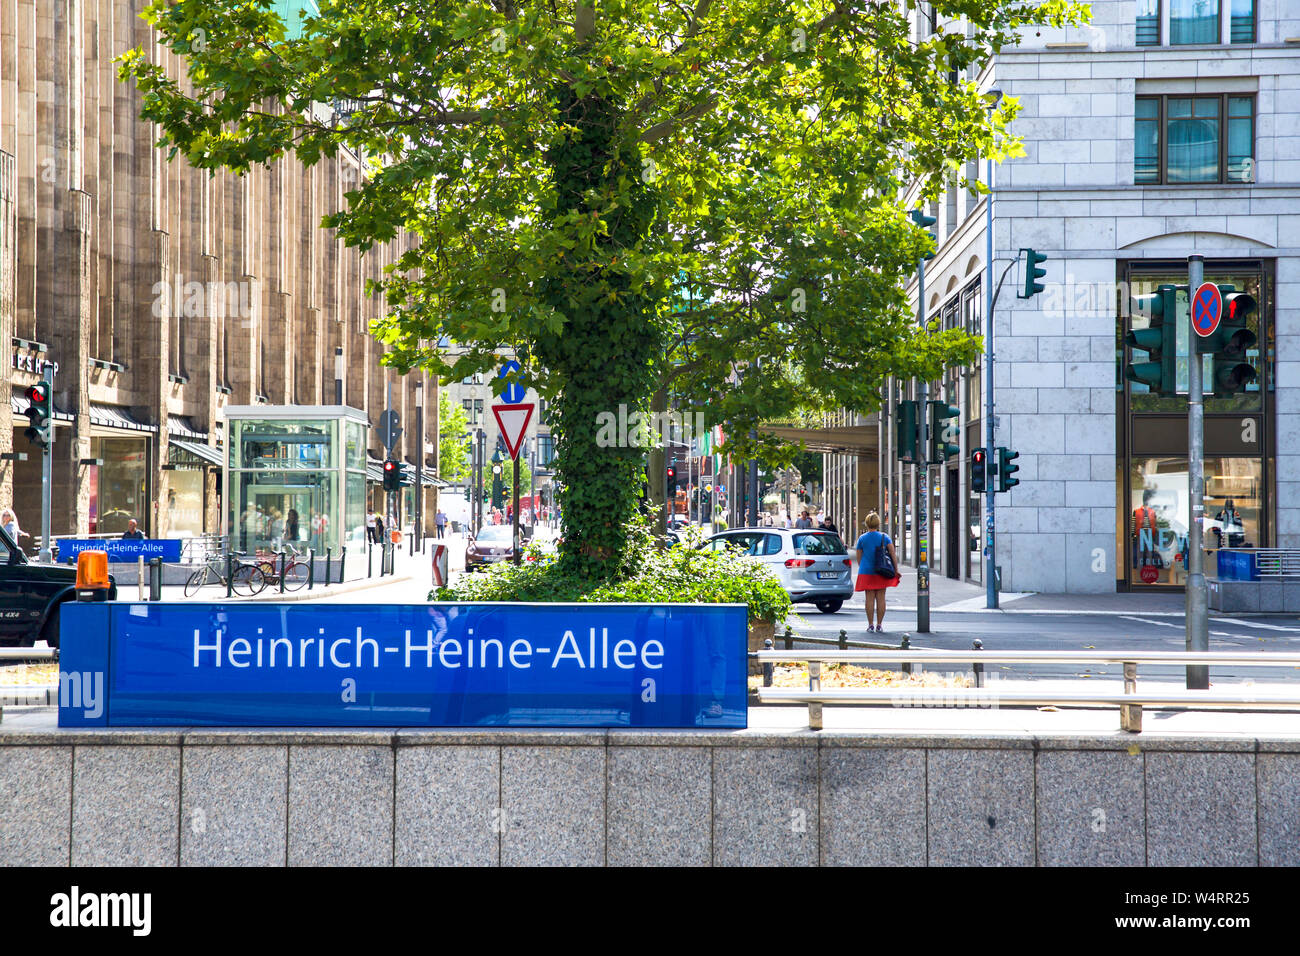 Heinrich-Heine-Allee in Dusseldorf - Germany Stock Photo - Alamy